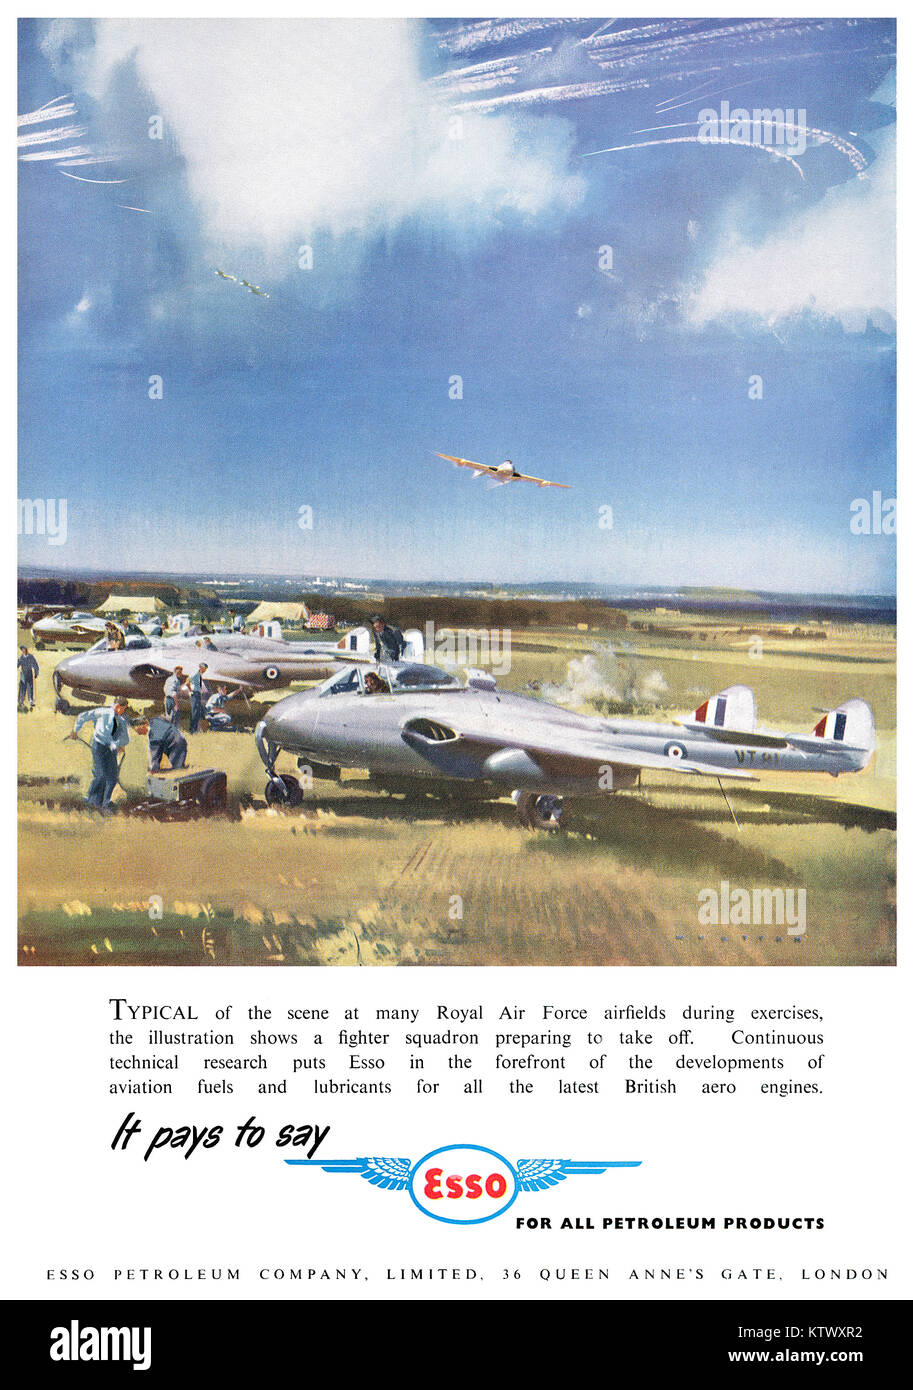 1951 britischen Werbung für Esso Flugbenzin, mit Der de Havilland Vampire Jet Fighter Aircraft. Stockfoto